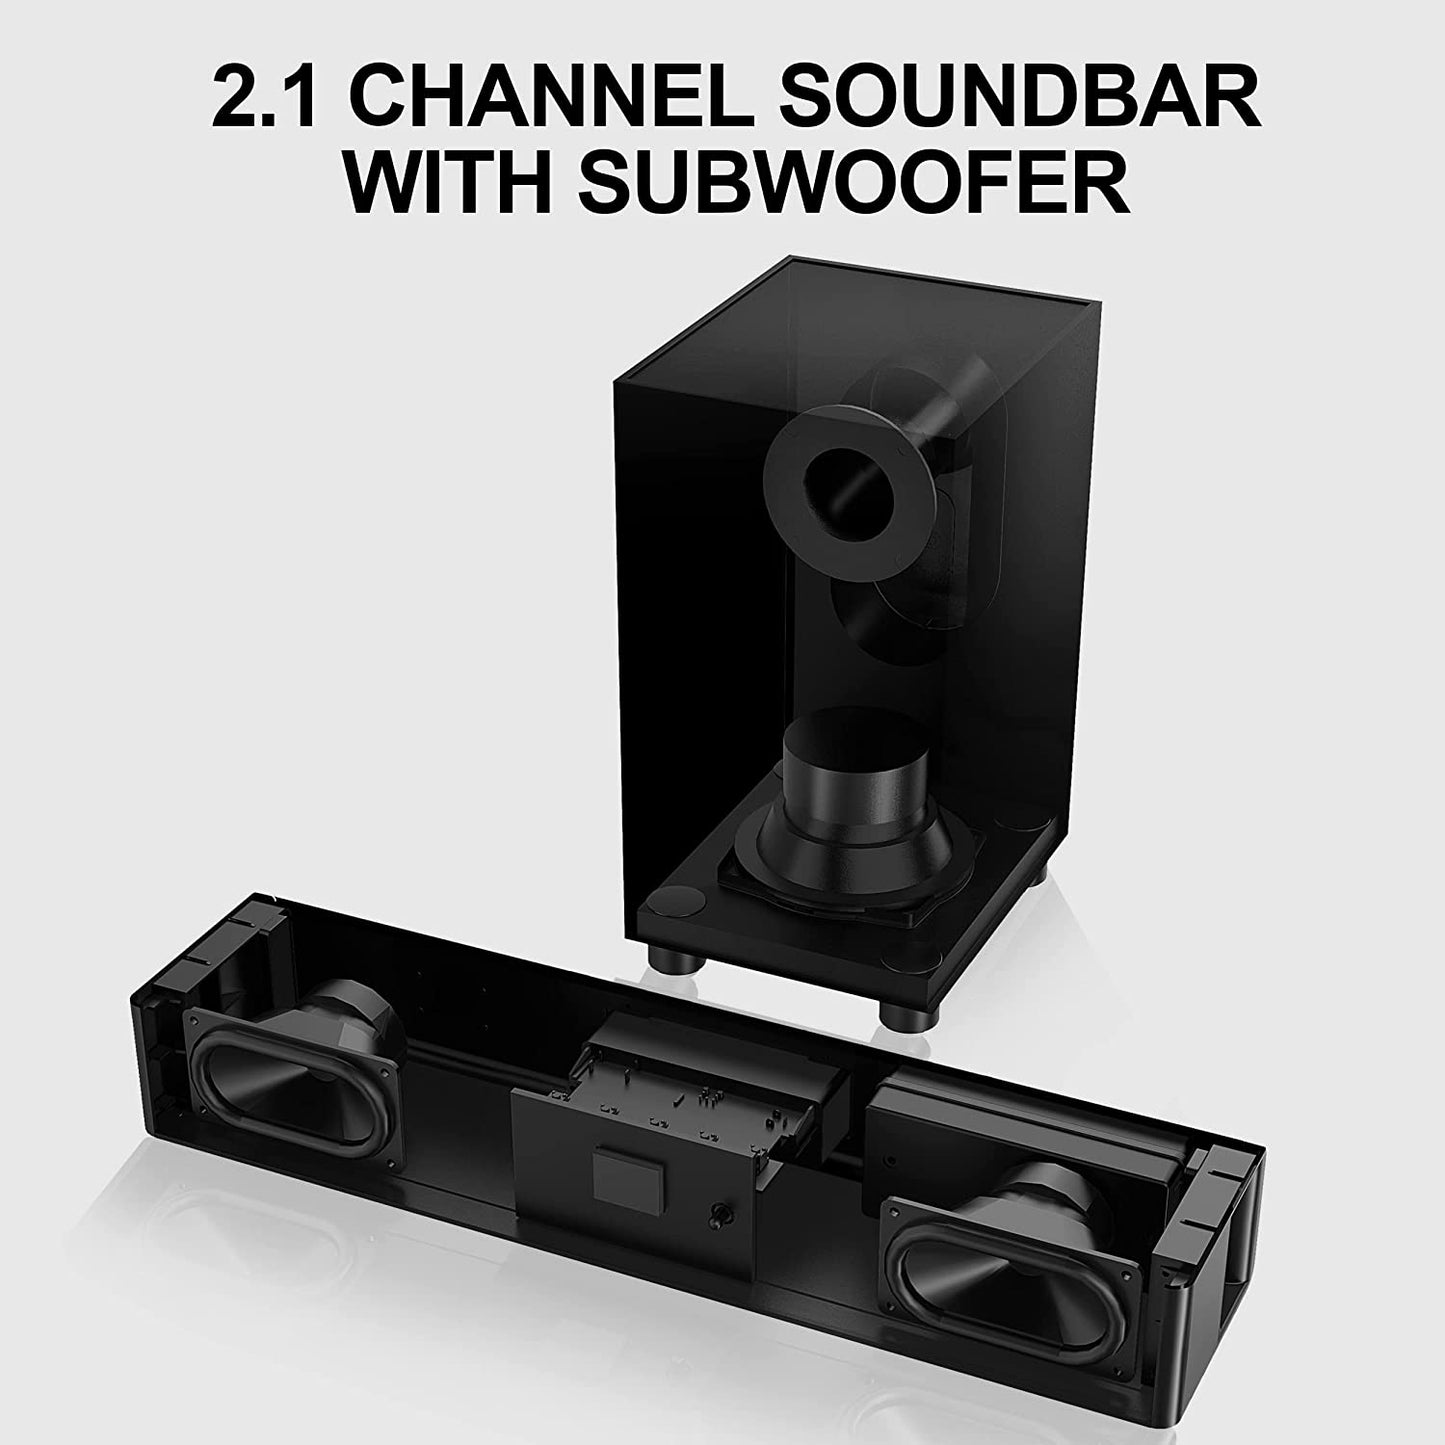 Barra de sonido con subwoofer, barra de sonido 2.1 para TV, PC, Juegos